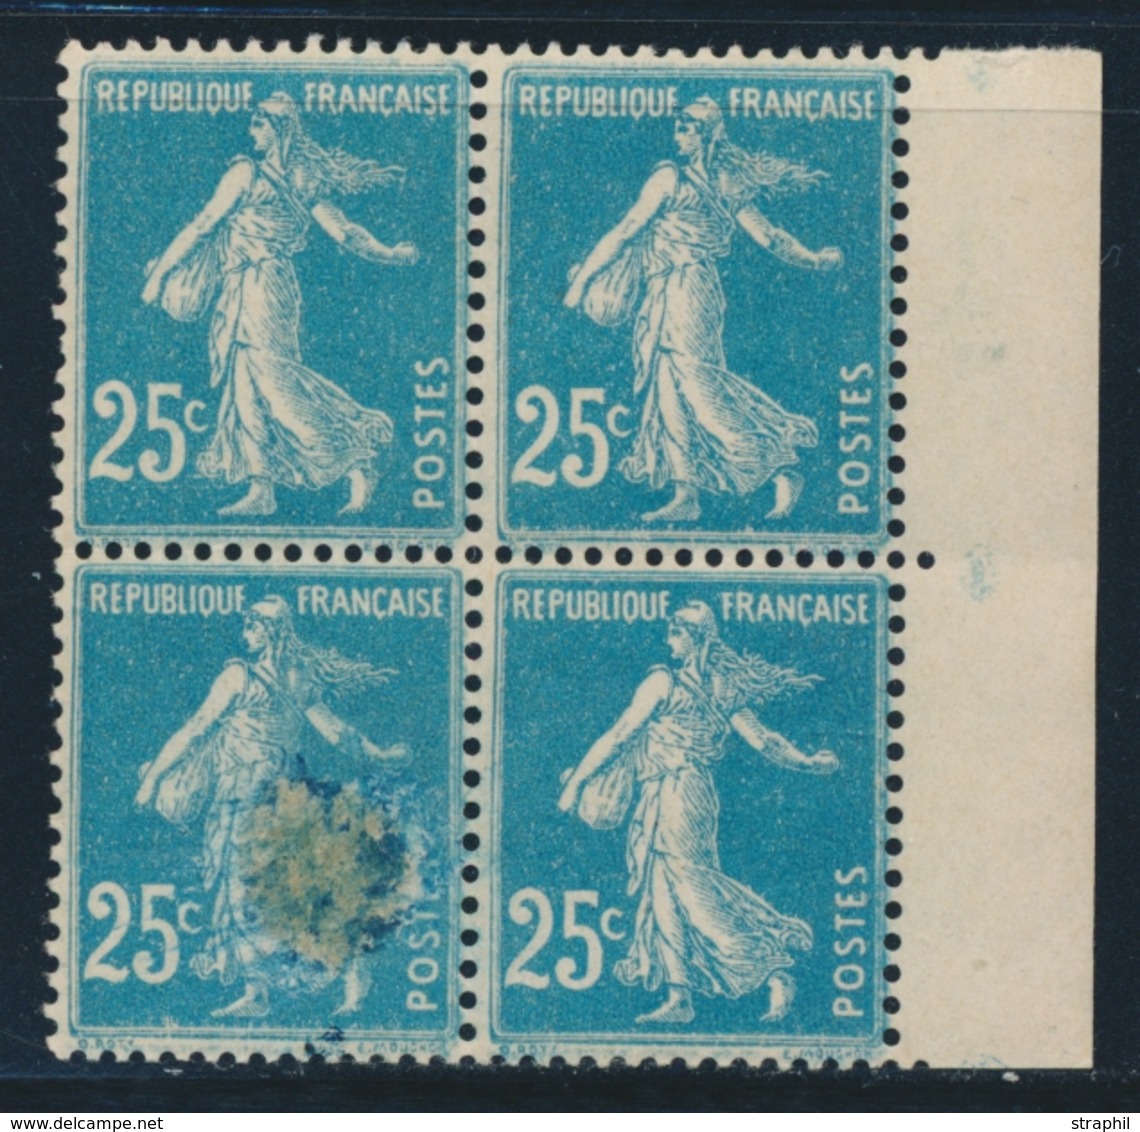 ** VARIETES  - ** - N°140 - Bloc De 4 - BDF - Superbe Variété D'Impression S/1 T. - TB - Unused Stamps